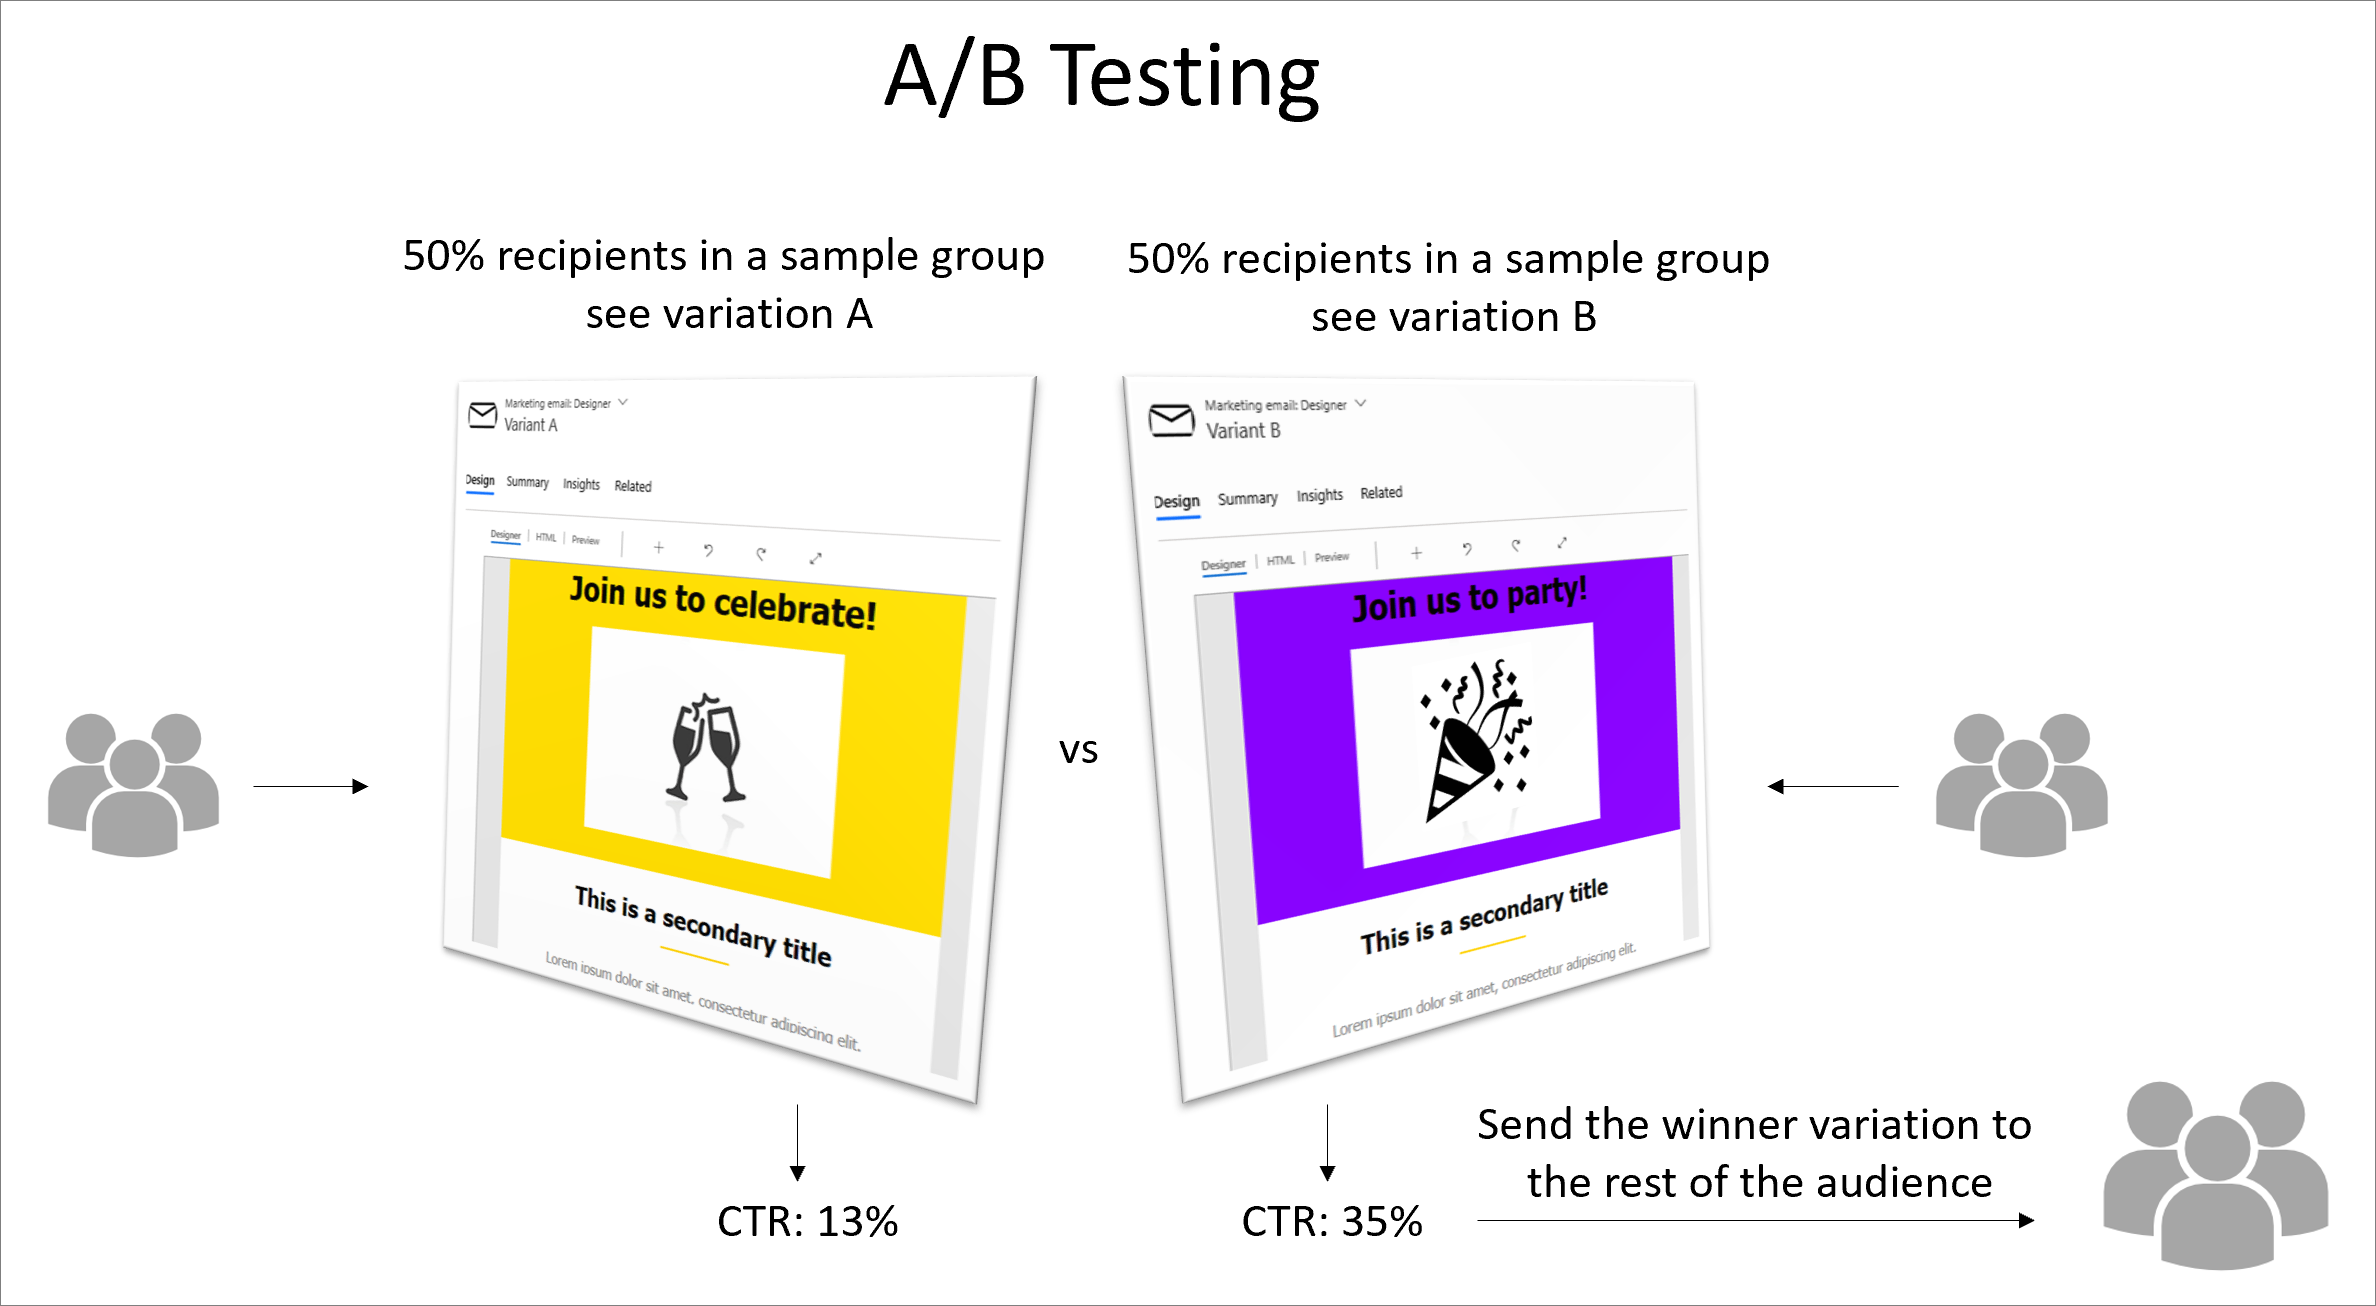 Overzichtsdiagram van A/B-testproces